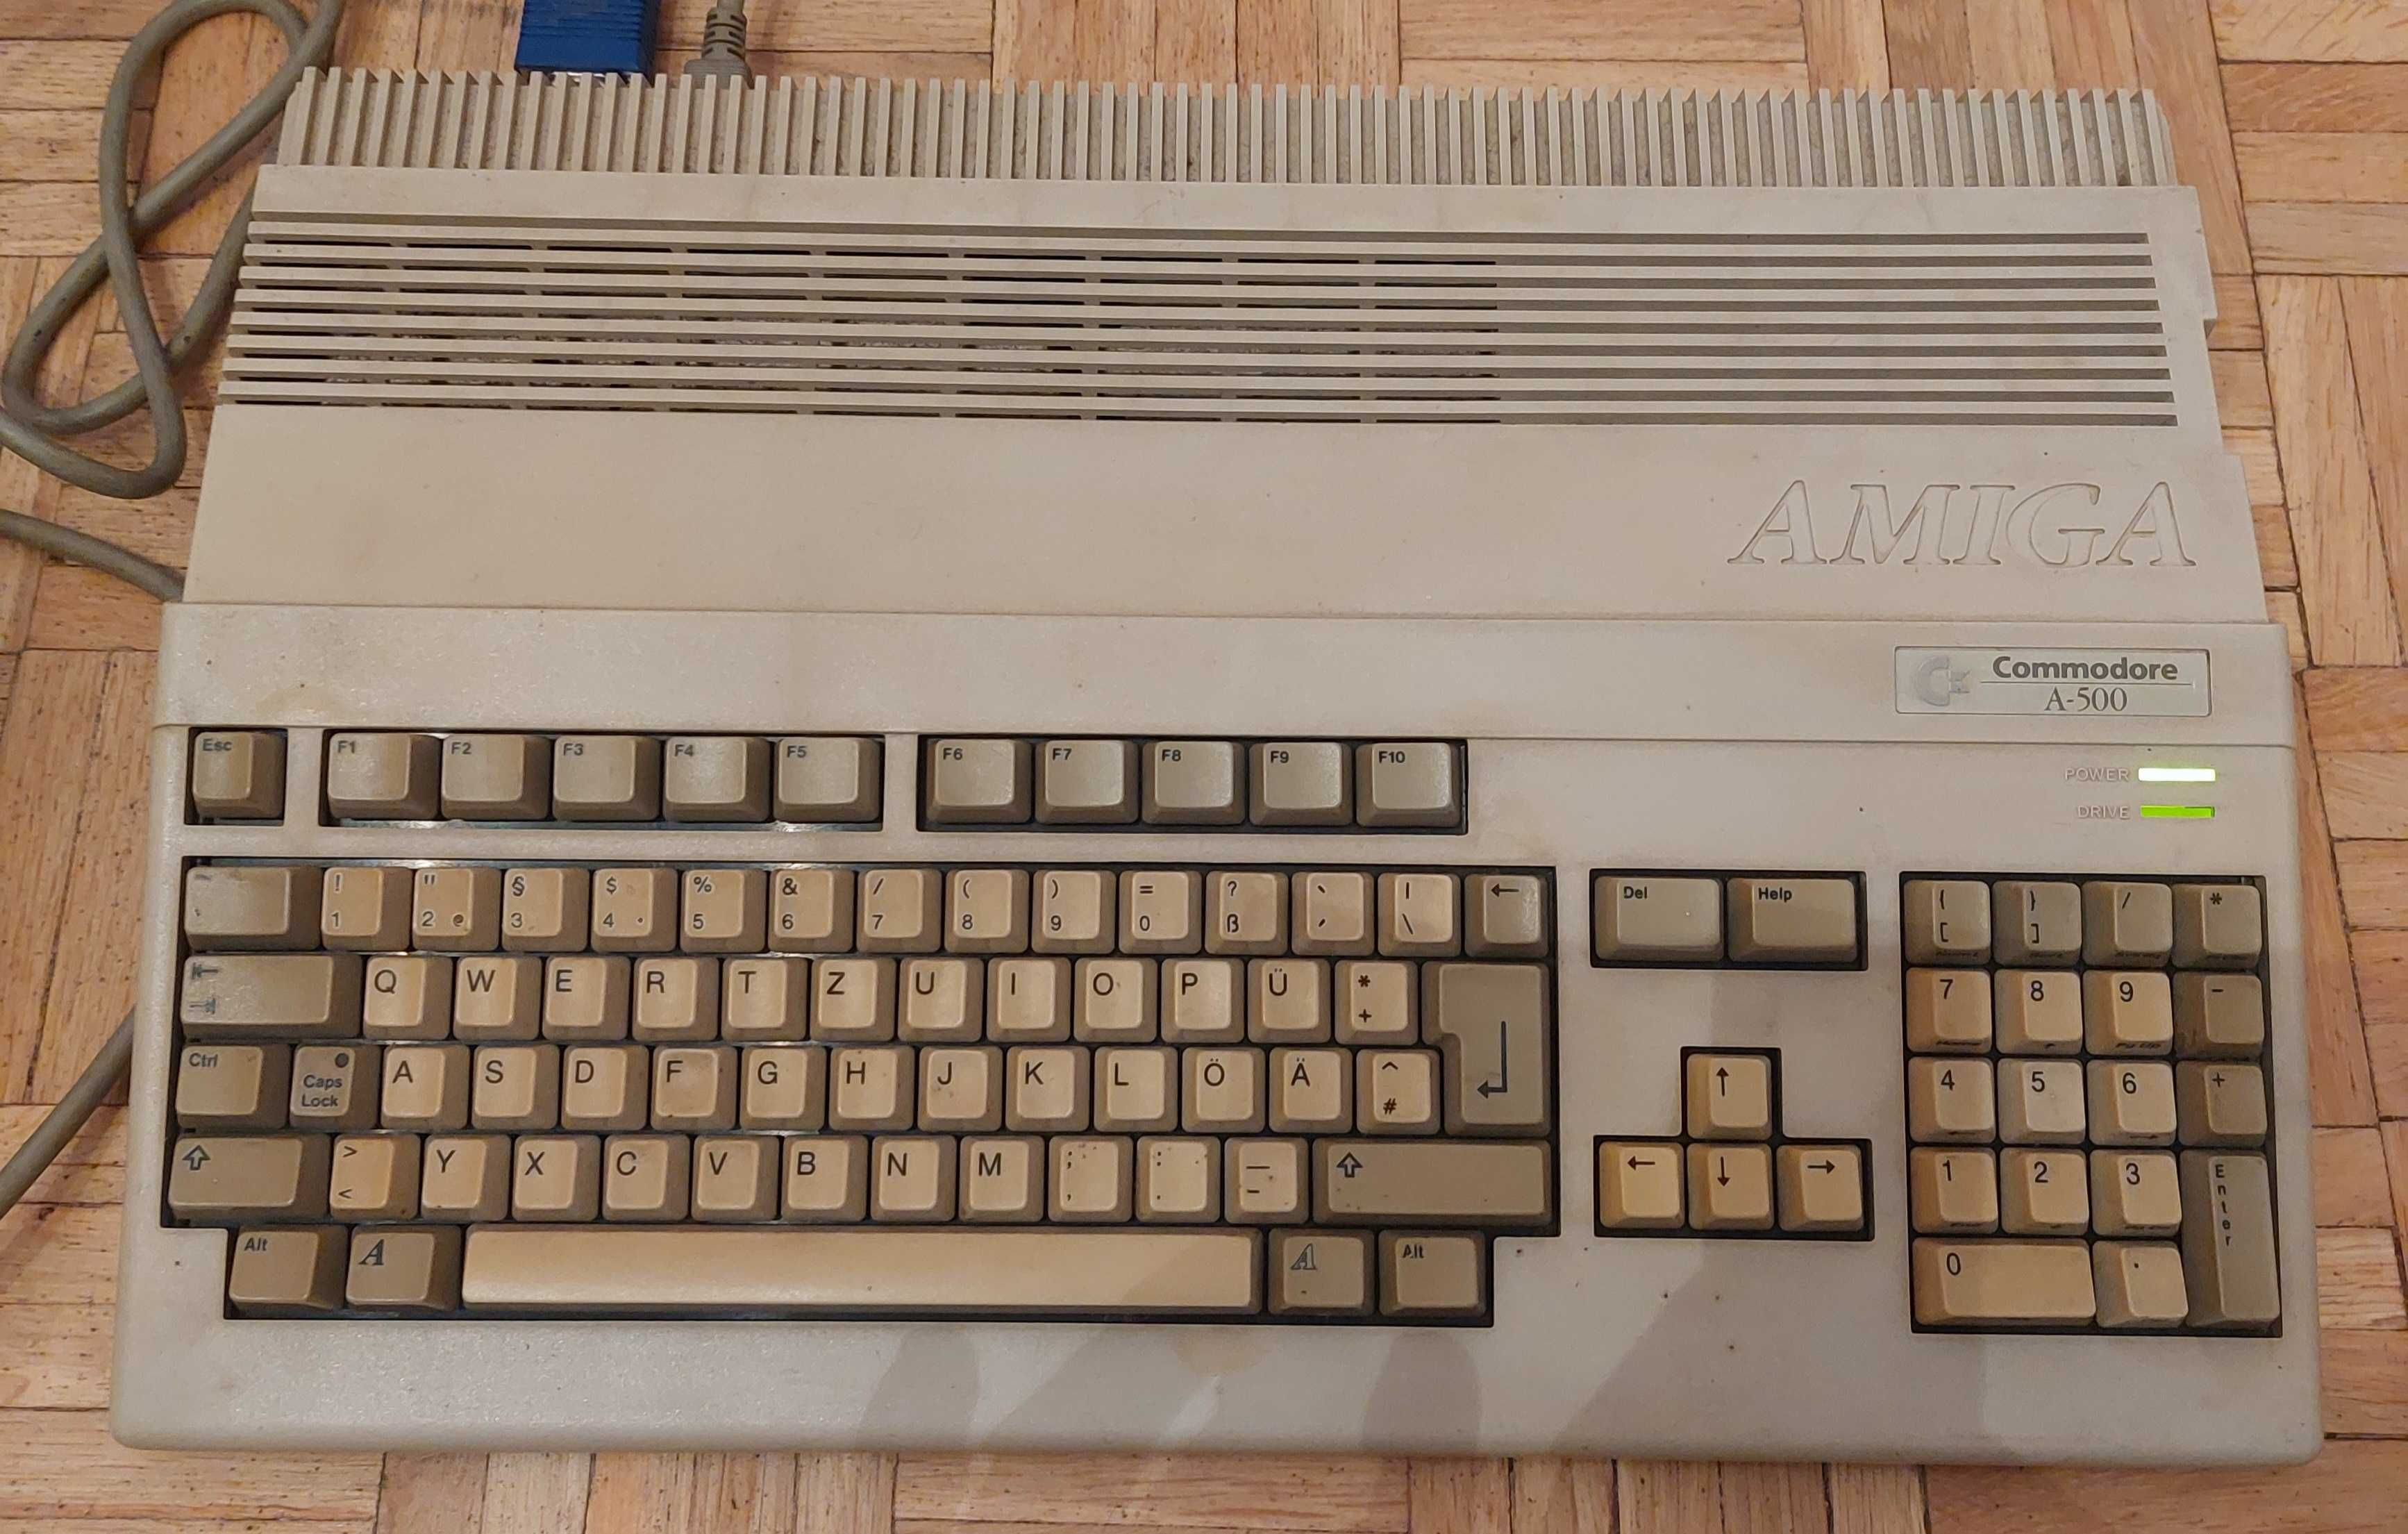 Komputer Amiga a500